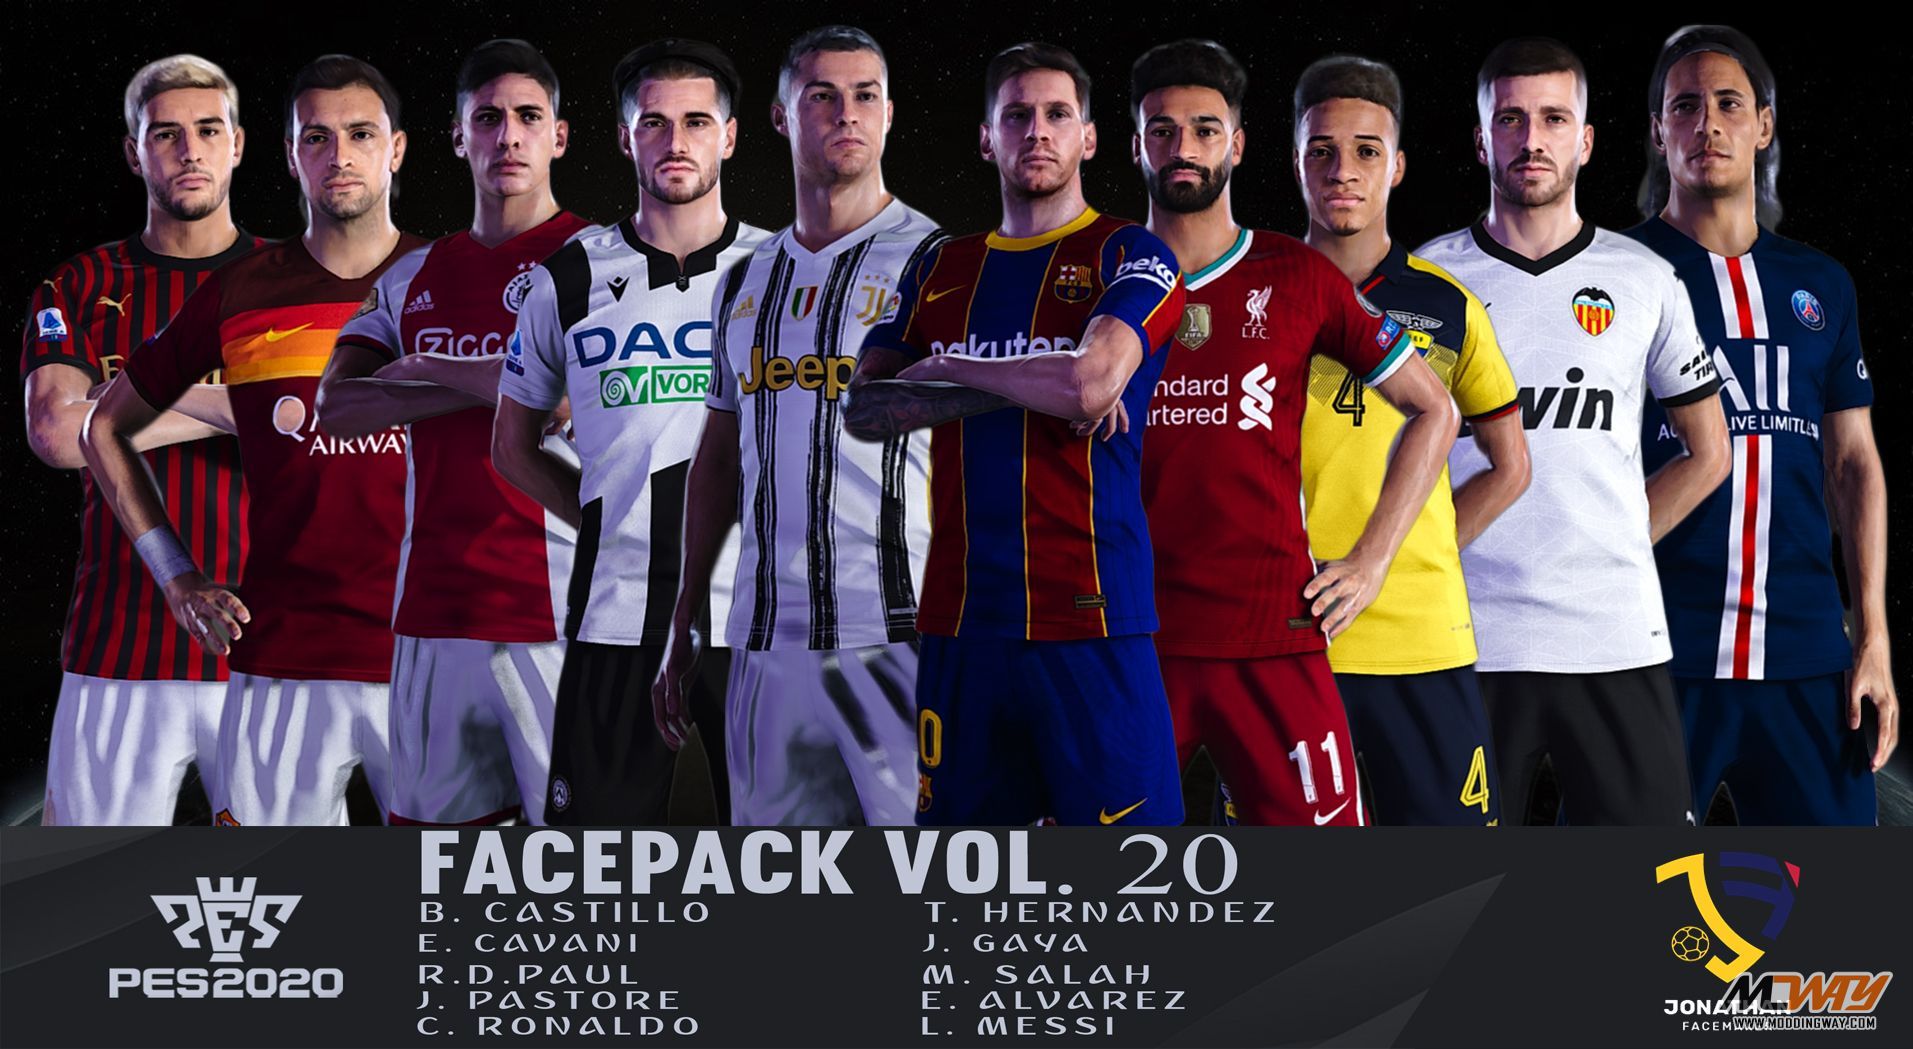 Faces Pack Vol. 20 PES 2020 Pro Evolution Soccer 2020 at